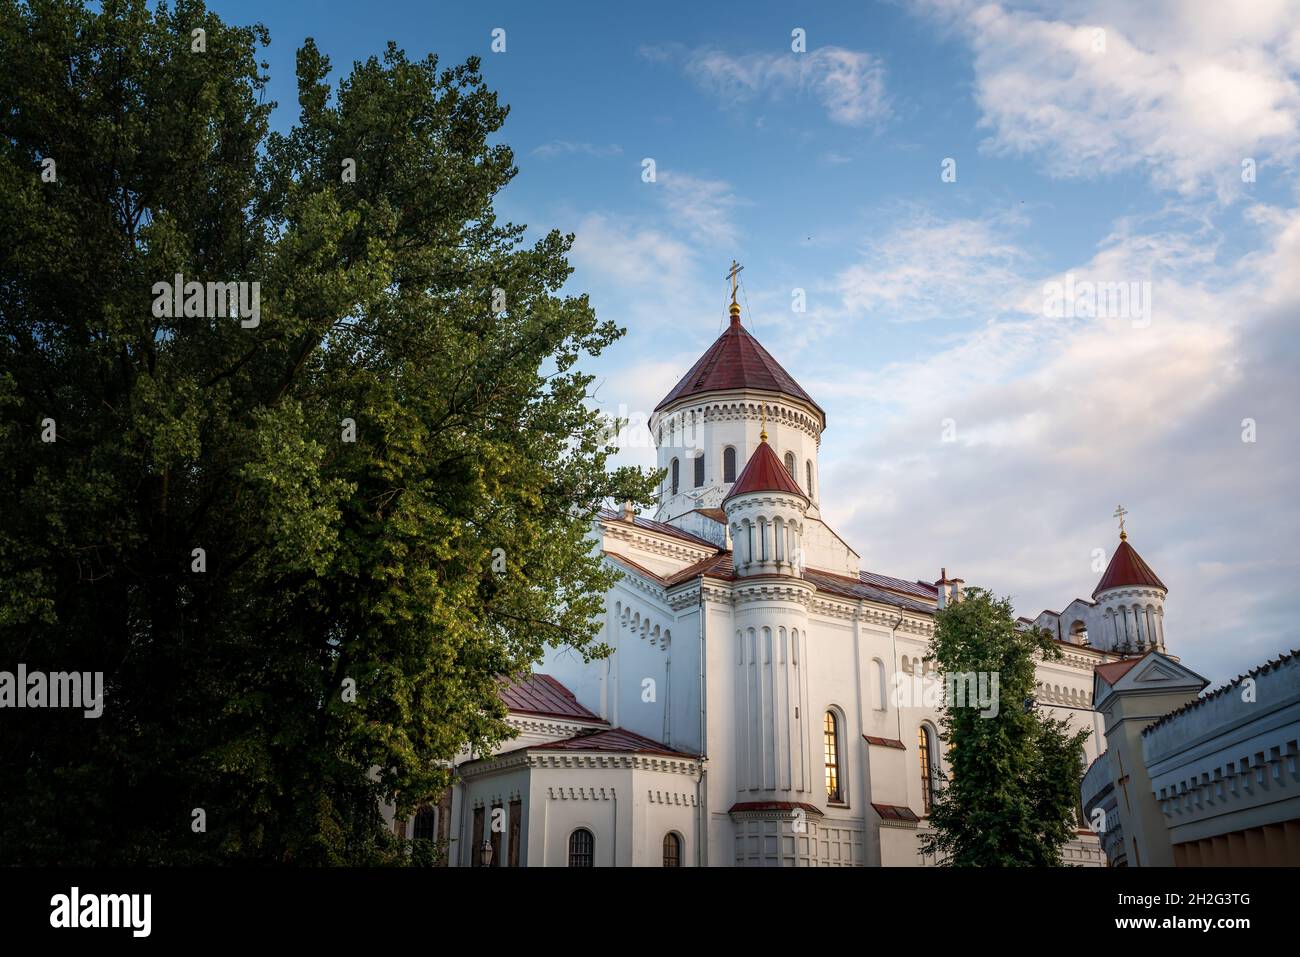 Orthodox Cathedral of the Theotokos - Vilnius, Lithuania Stock Photo